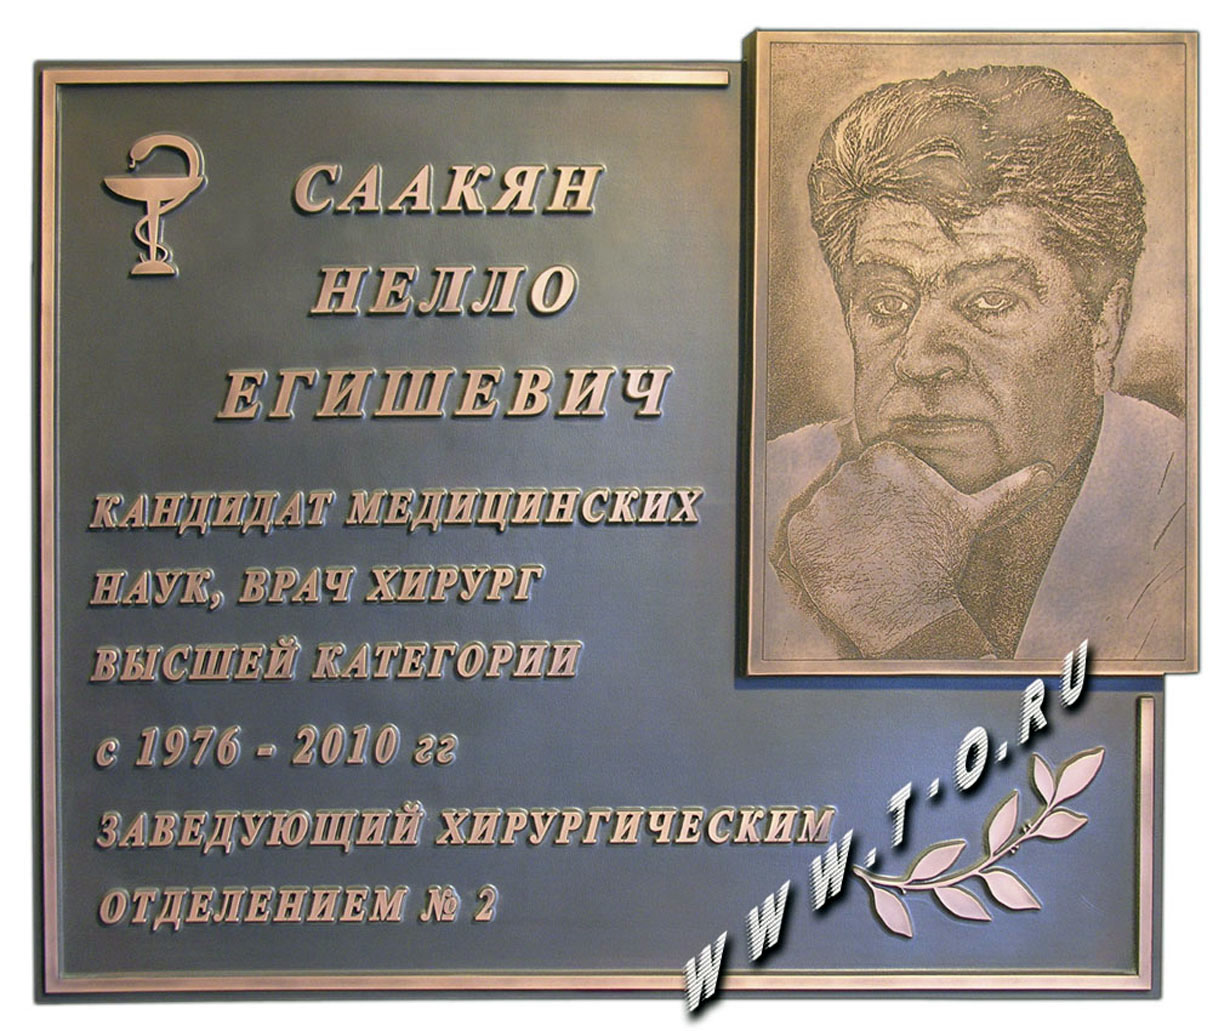 Памятная мемориальная доска из металла (медь с патиной - искусственным старением)  и гравюрой лица на меди в память о хирурге Саакян Нелло Егишевиче.